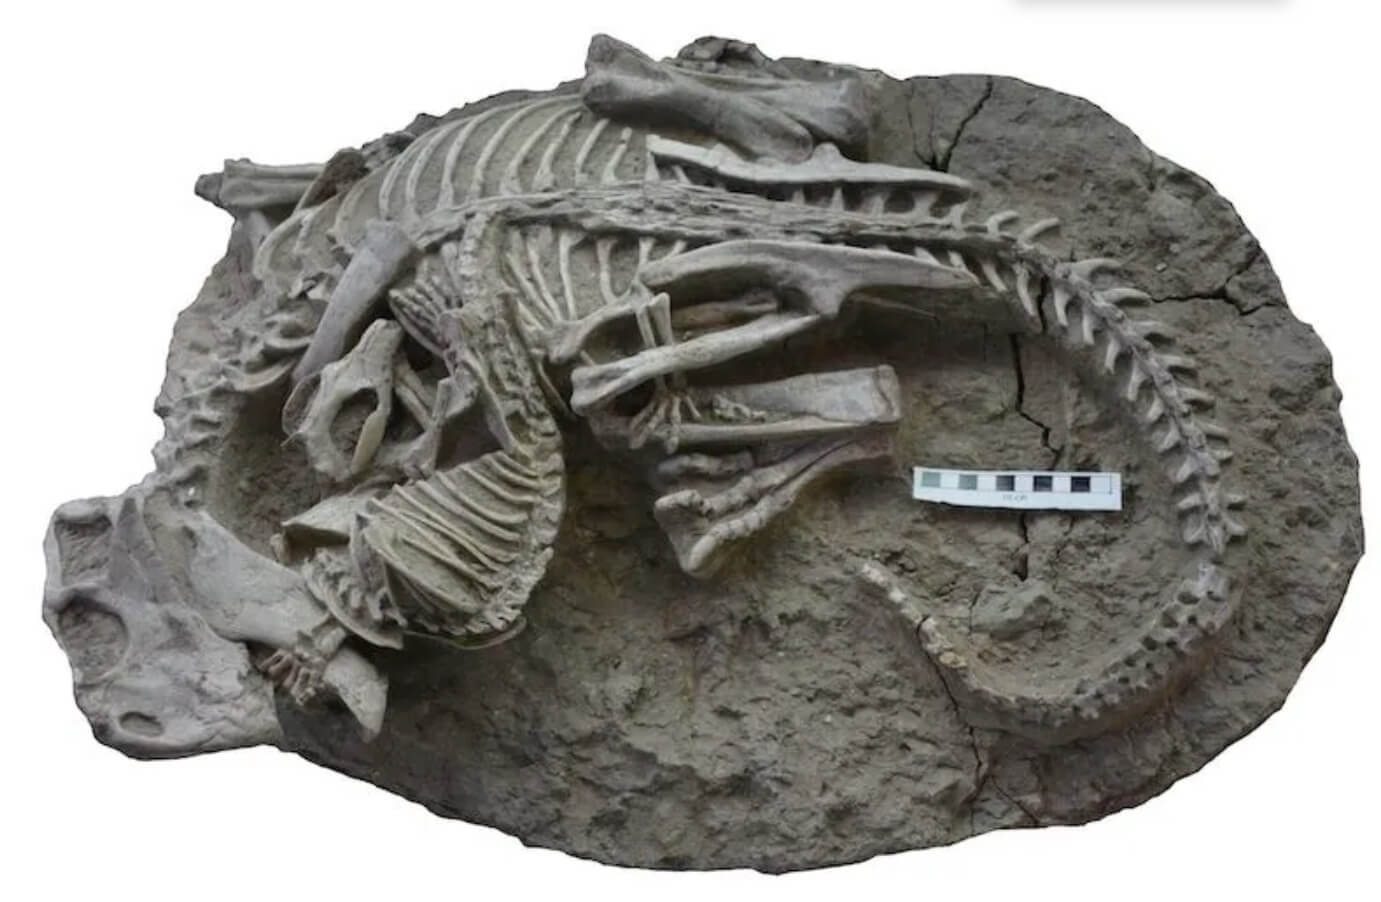 Динозавры не были непобедимыми. Финальная схватка древнего млекопитающего и динозавра. Изображение: Канадский музей природы. Фото.